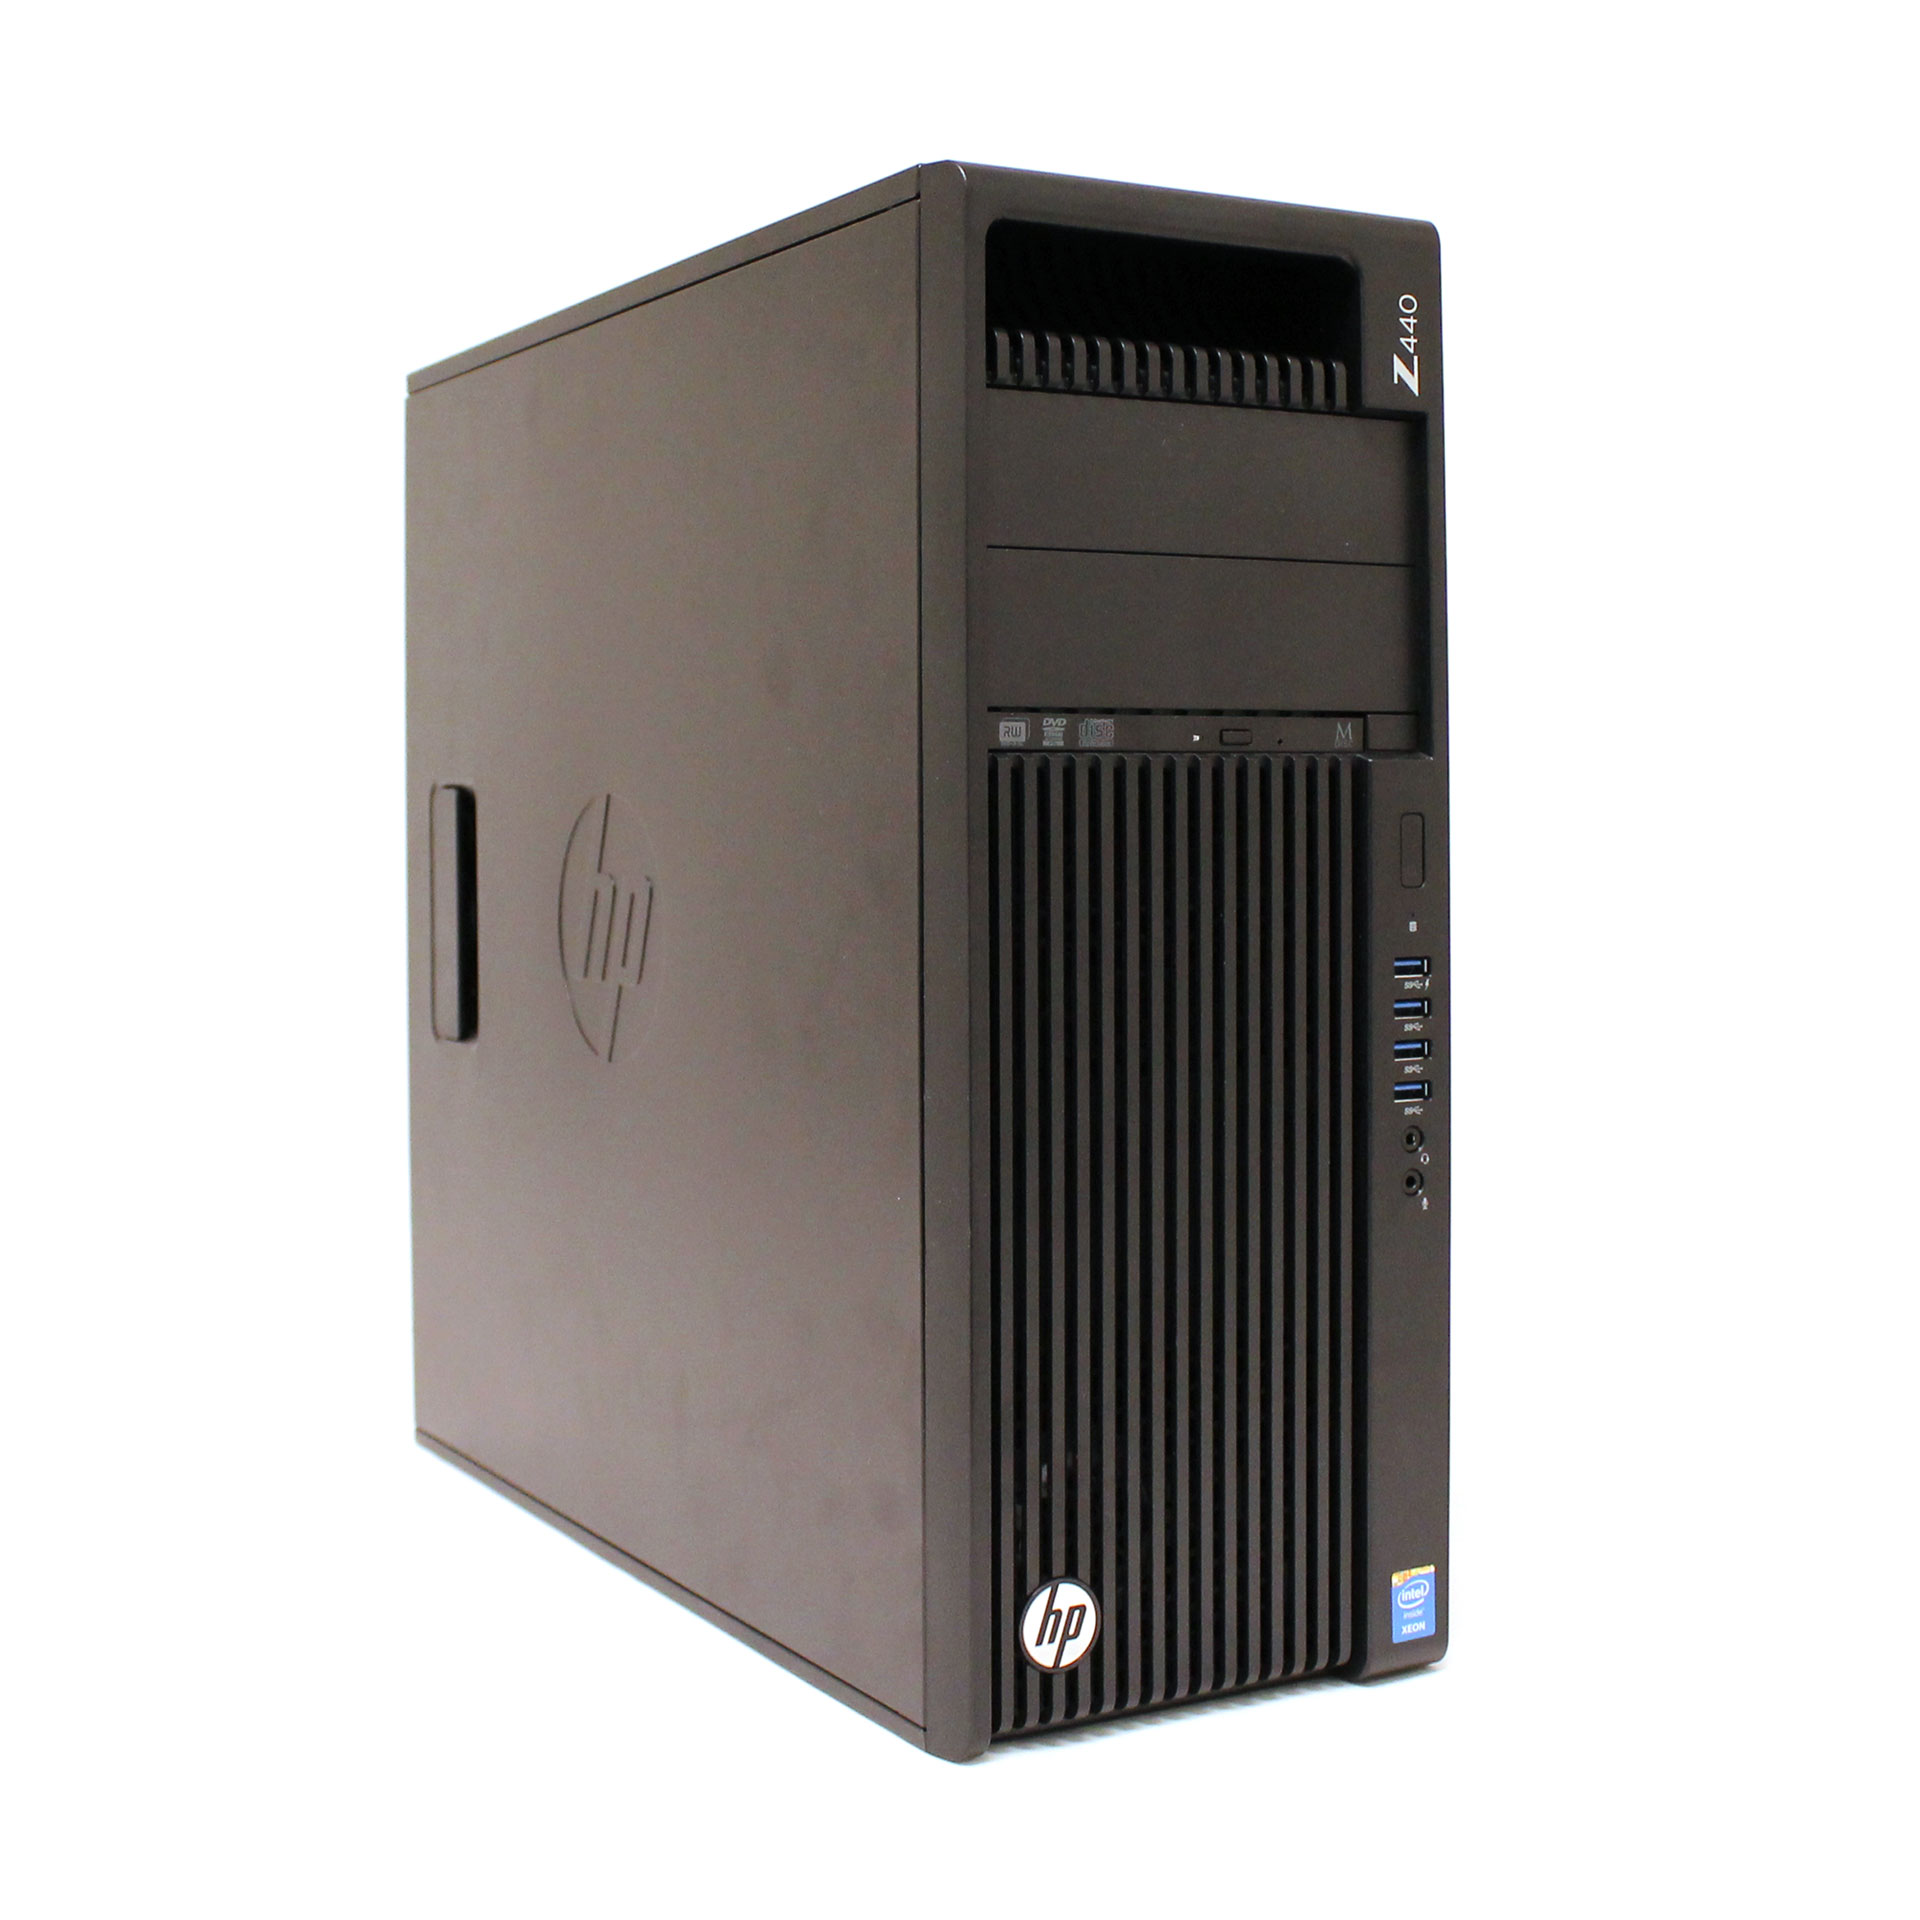 HP SB Workstation Z440 F1M42UT#ABA Xeon E5-1620 1TB 8GB 4U WNTY